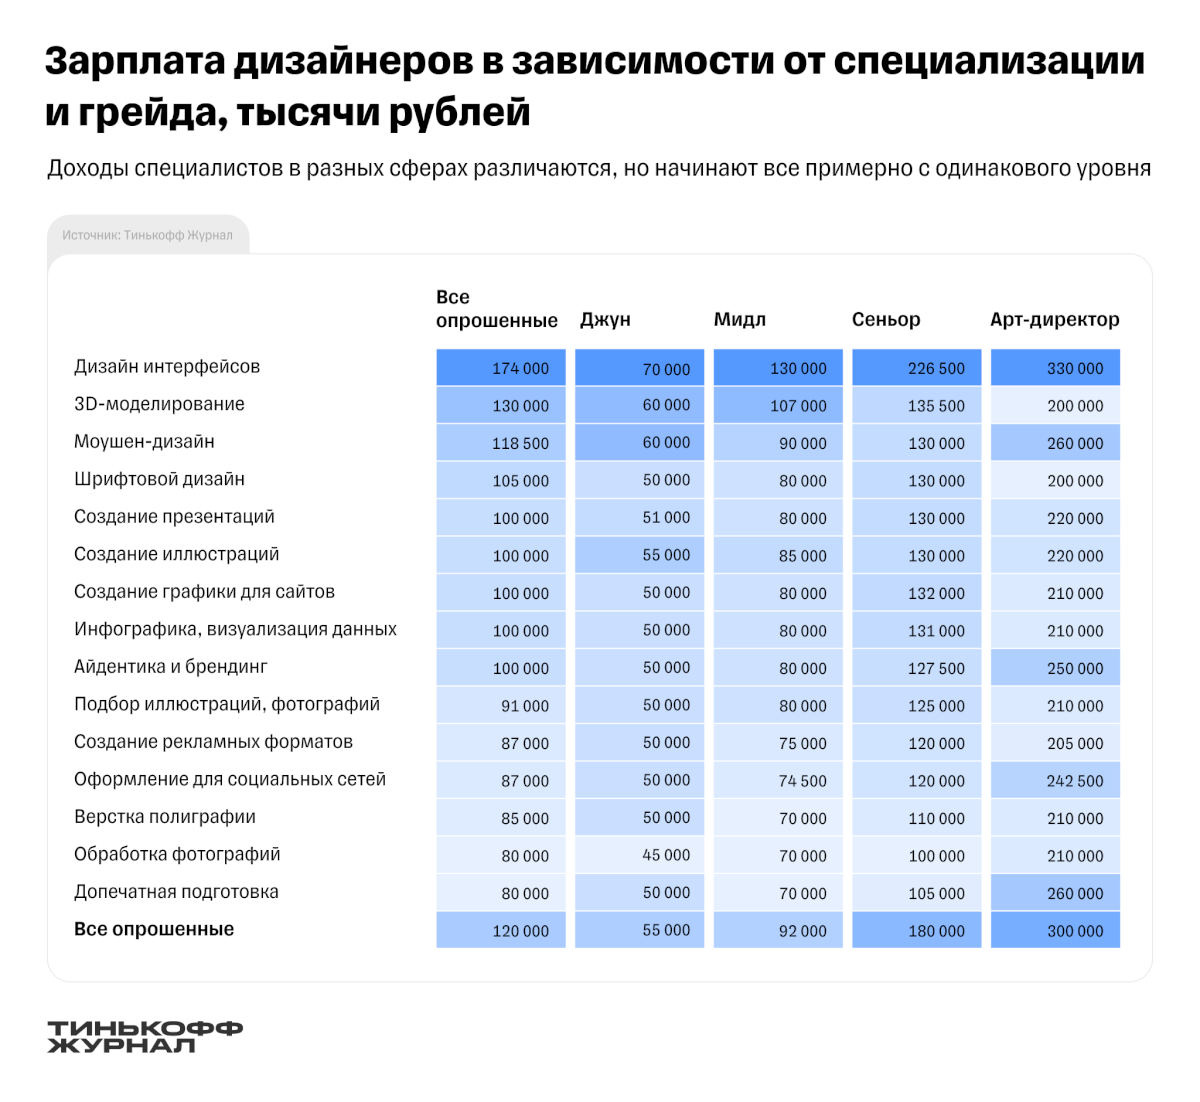 Зарплаты дизайнеров в России